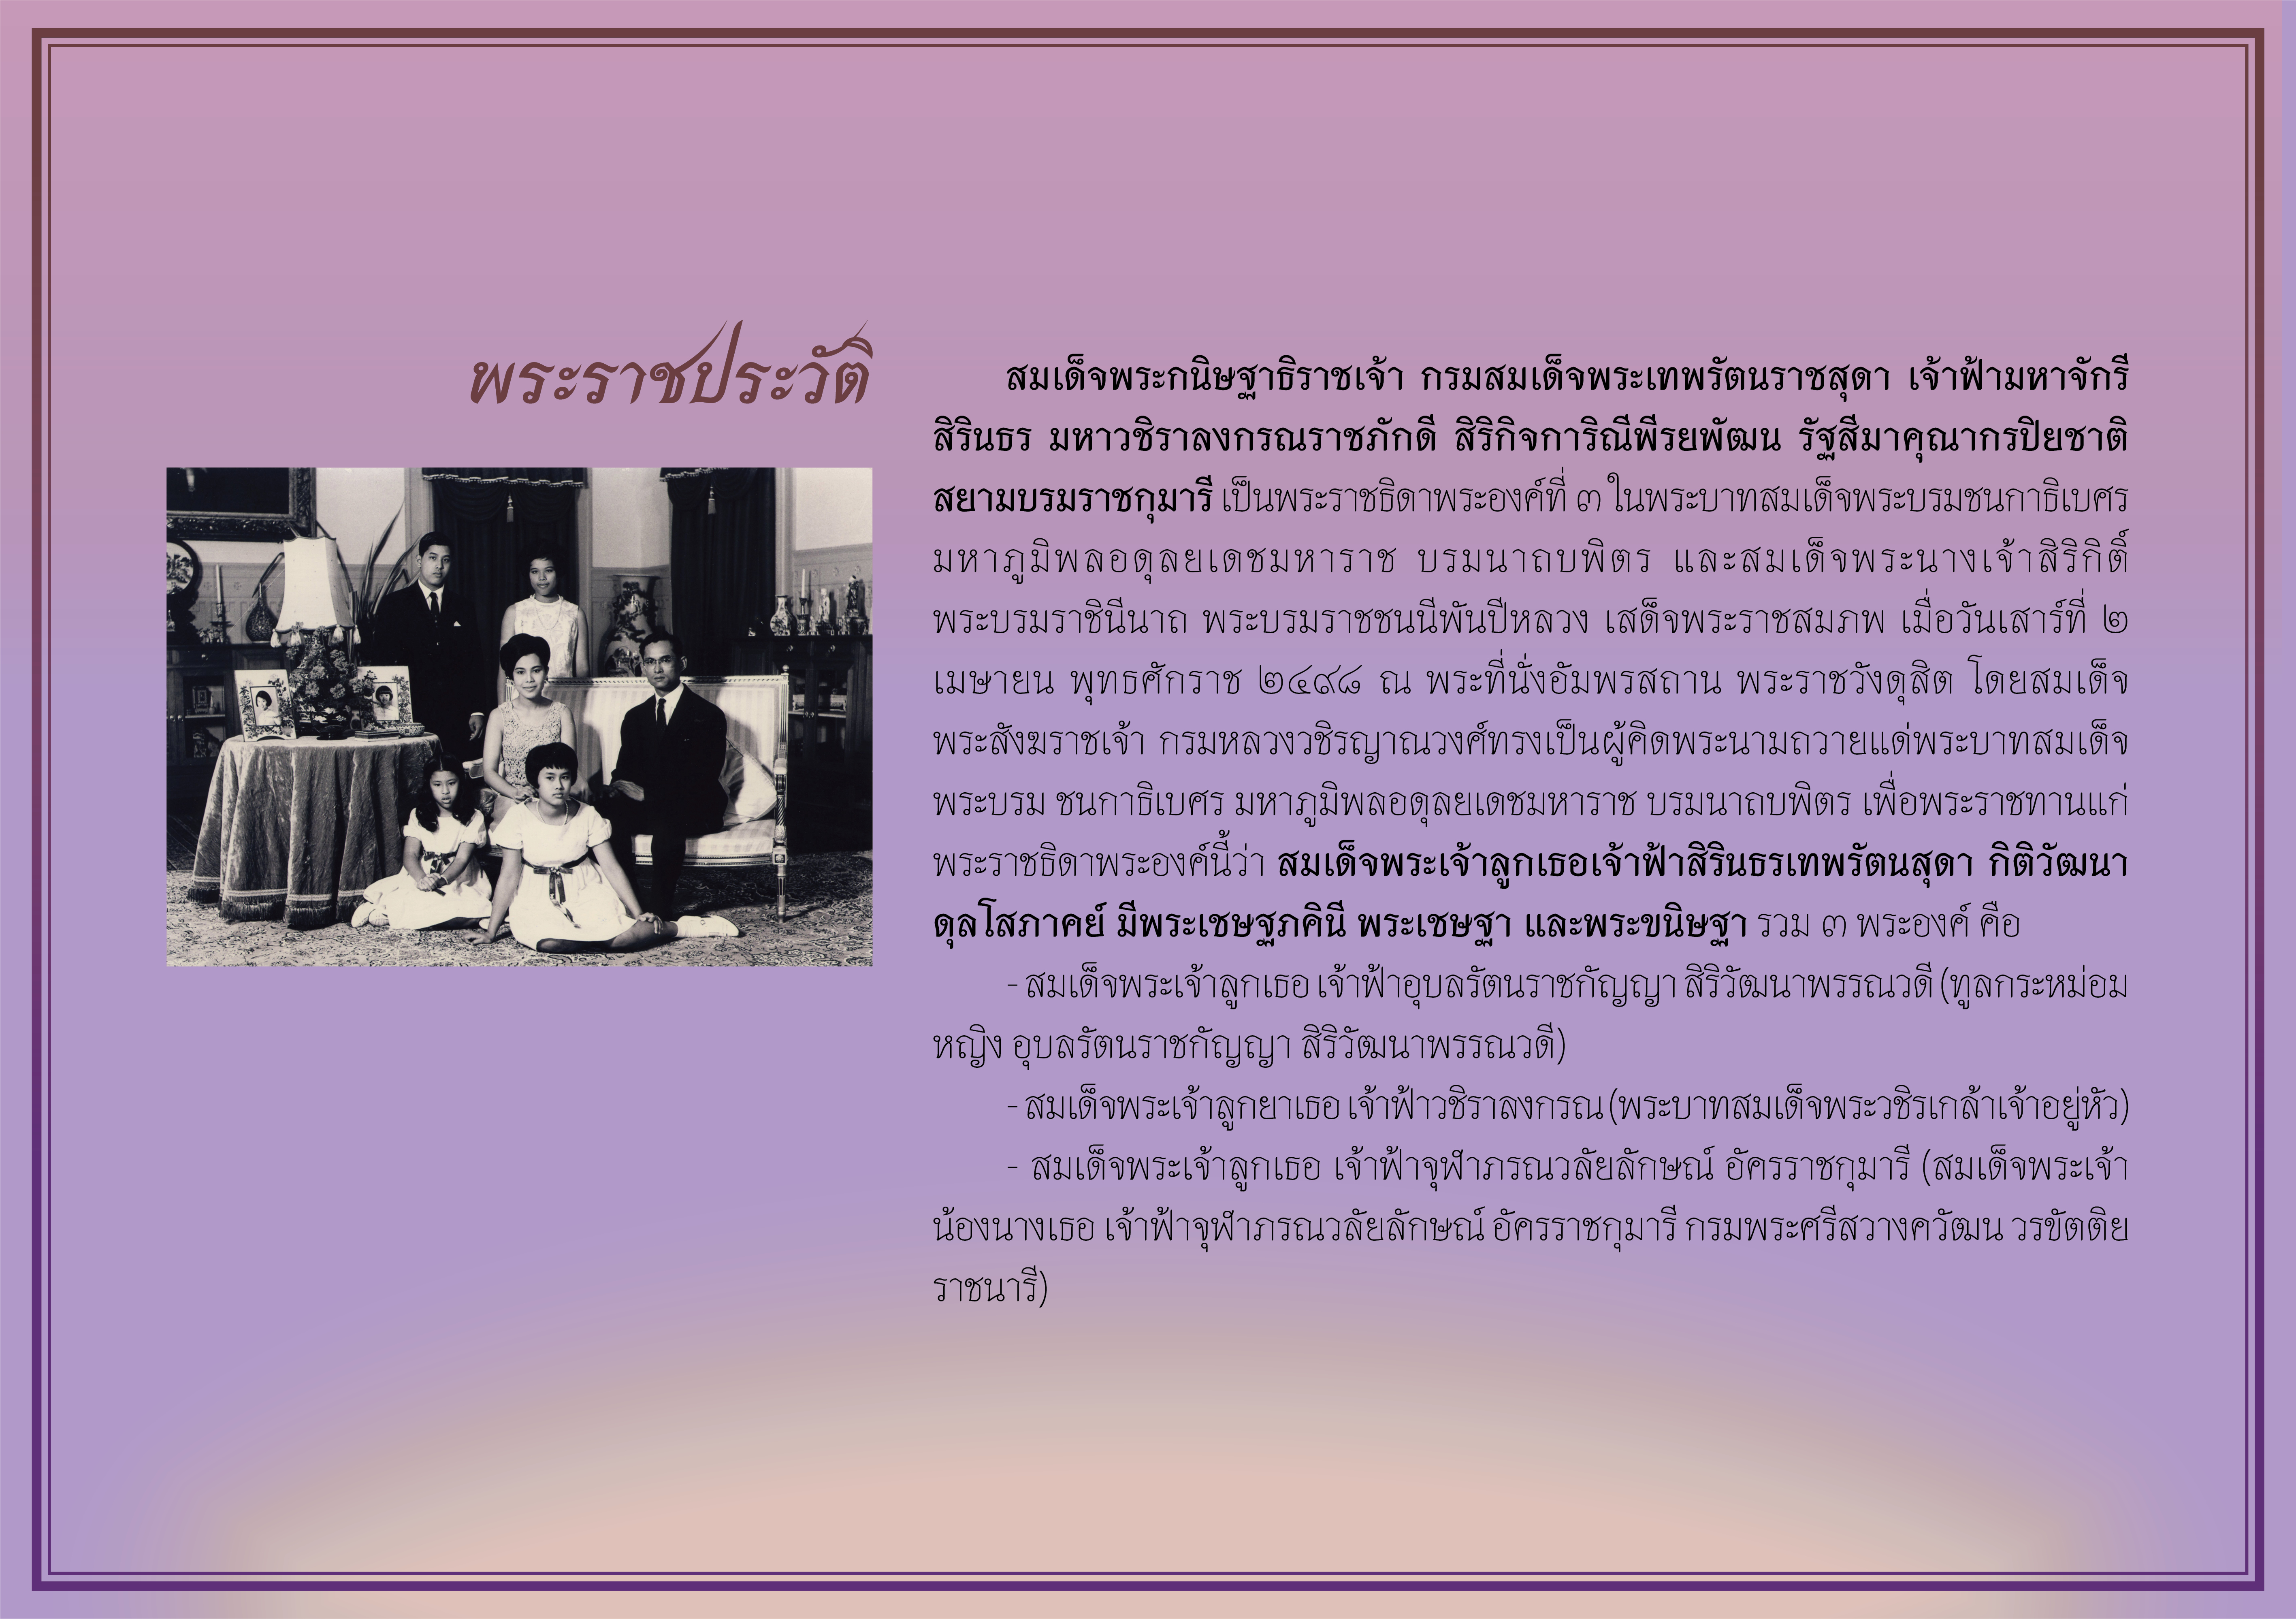 นิทรรศการเสมือนจริง เรื่อง “องค์เอกอัครราชูปถัมภกมรดกวัฒนธรรมไทย 